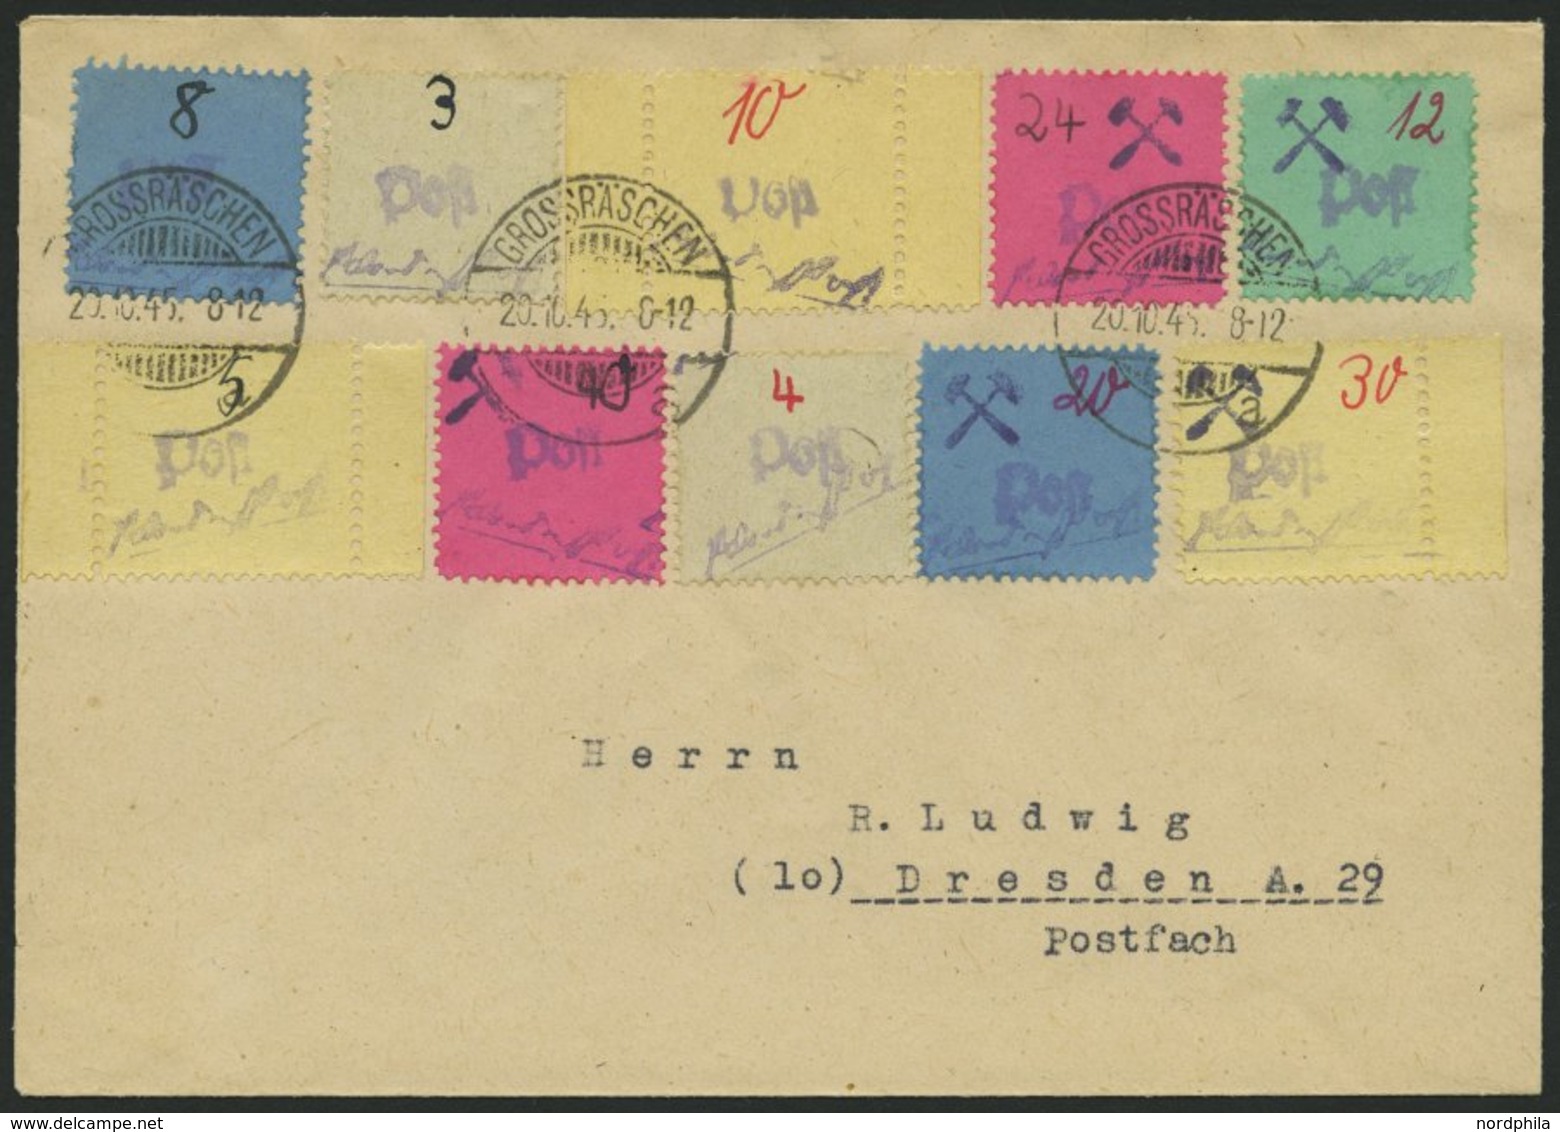 GROSSRÄSCHEN 3S,6S,10S BRIEF, 1946, 5, 10 Und 30 Pf. Gebührenmarken Aus Streifen Mit Zusatzfrankatur Auf Umschlag, Prach - Privatpost